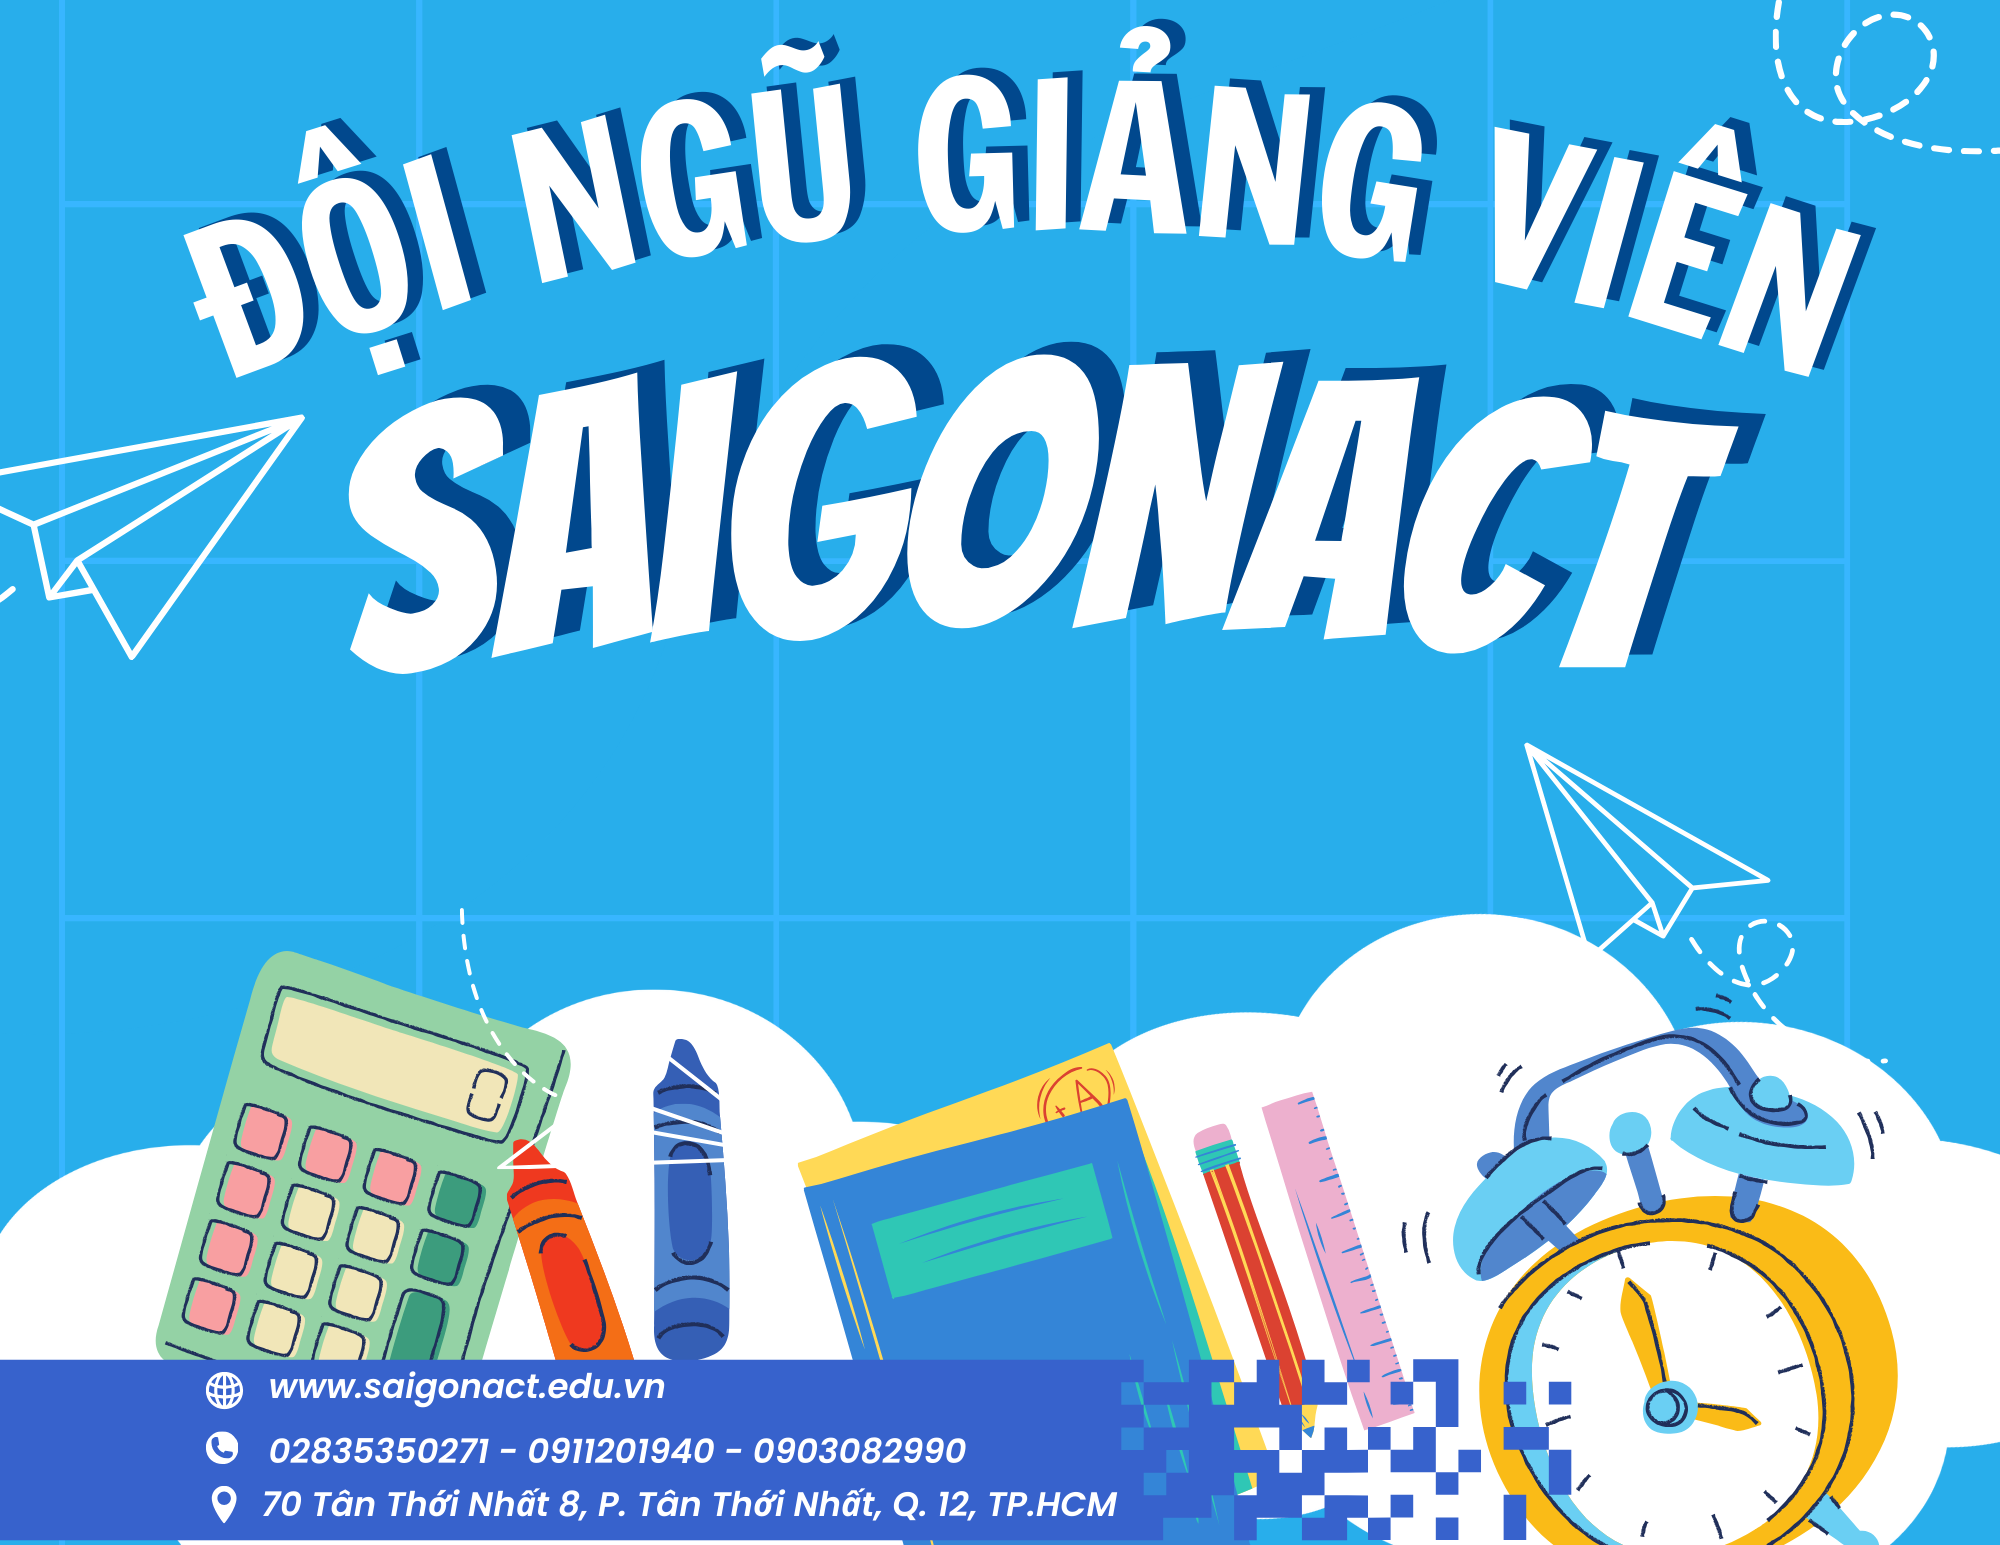 Saigonact - Nơi Hội Tụ Đội Ngũ Giảng Viên Ưu Tú và Nhiệt Huyết